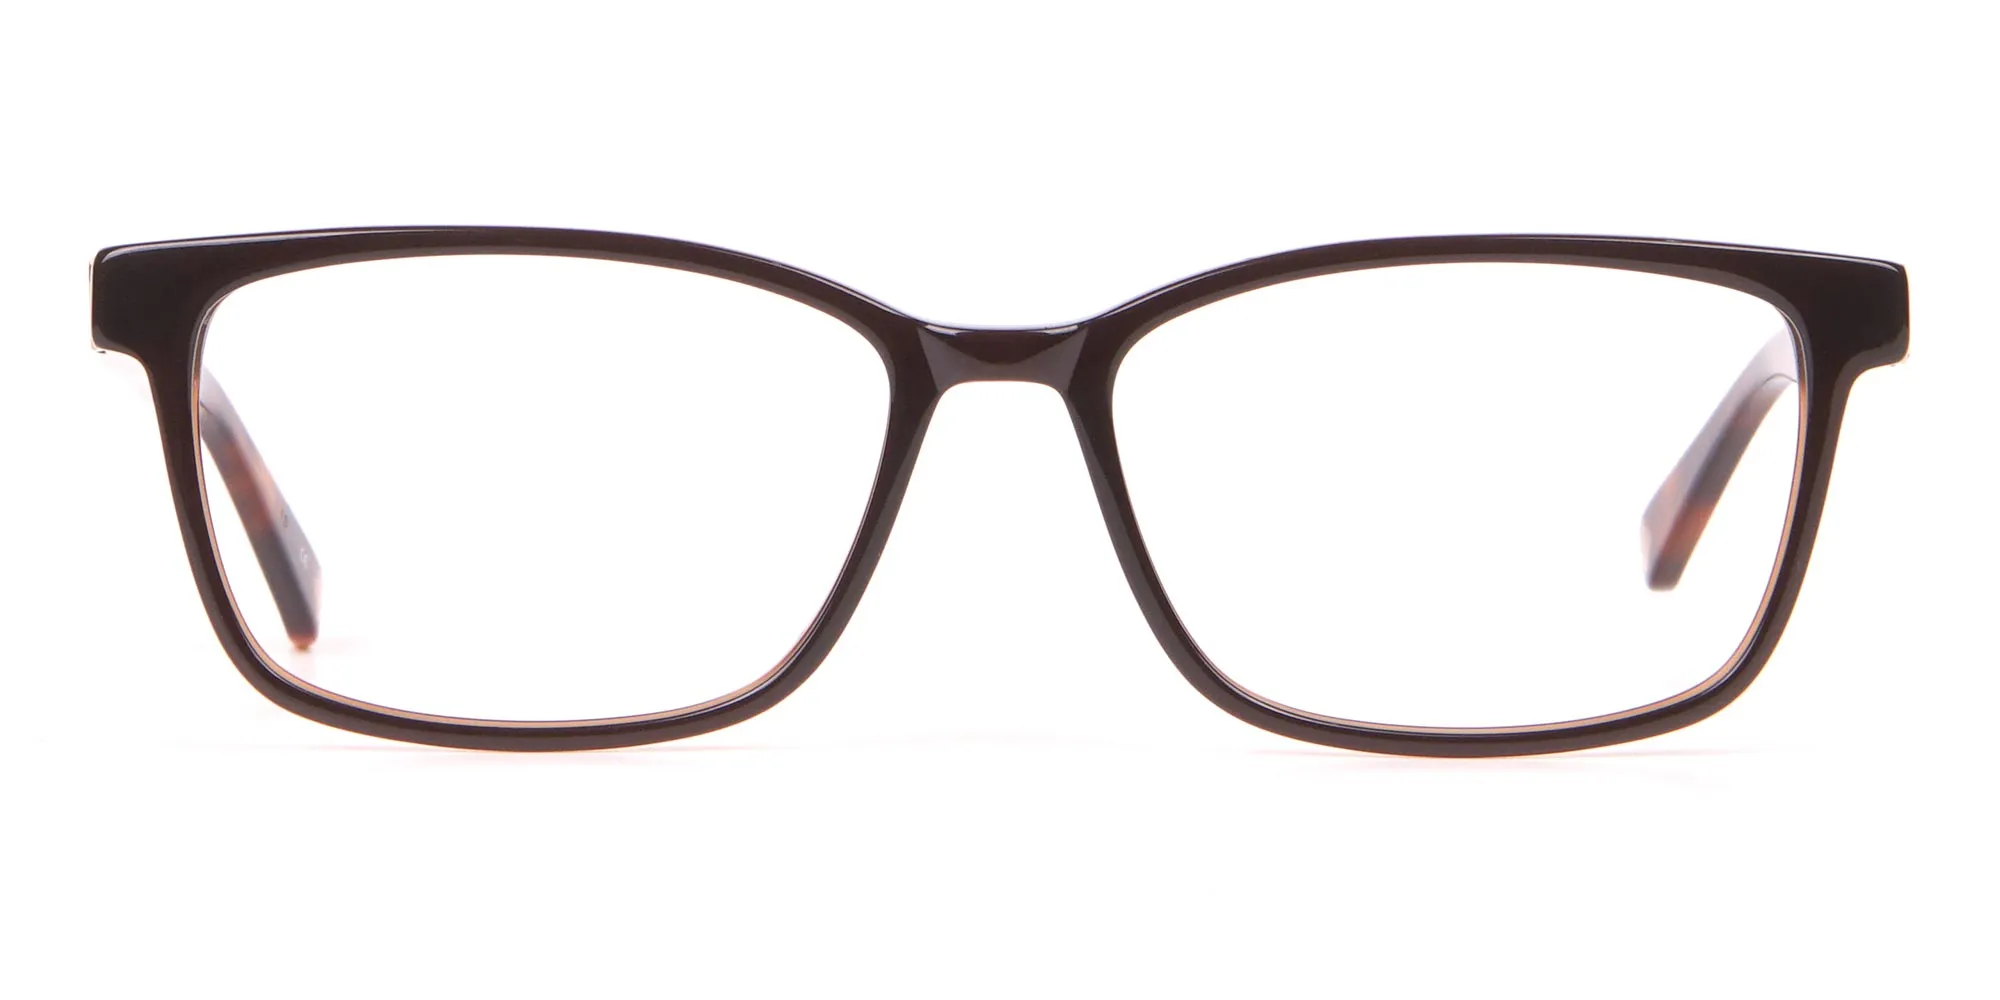 TED BAKER TB2810 FULLER Rectangular Glasses Black & Horn-2